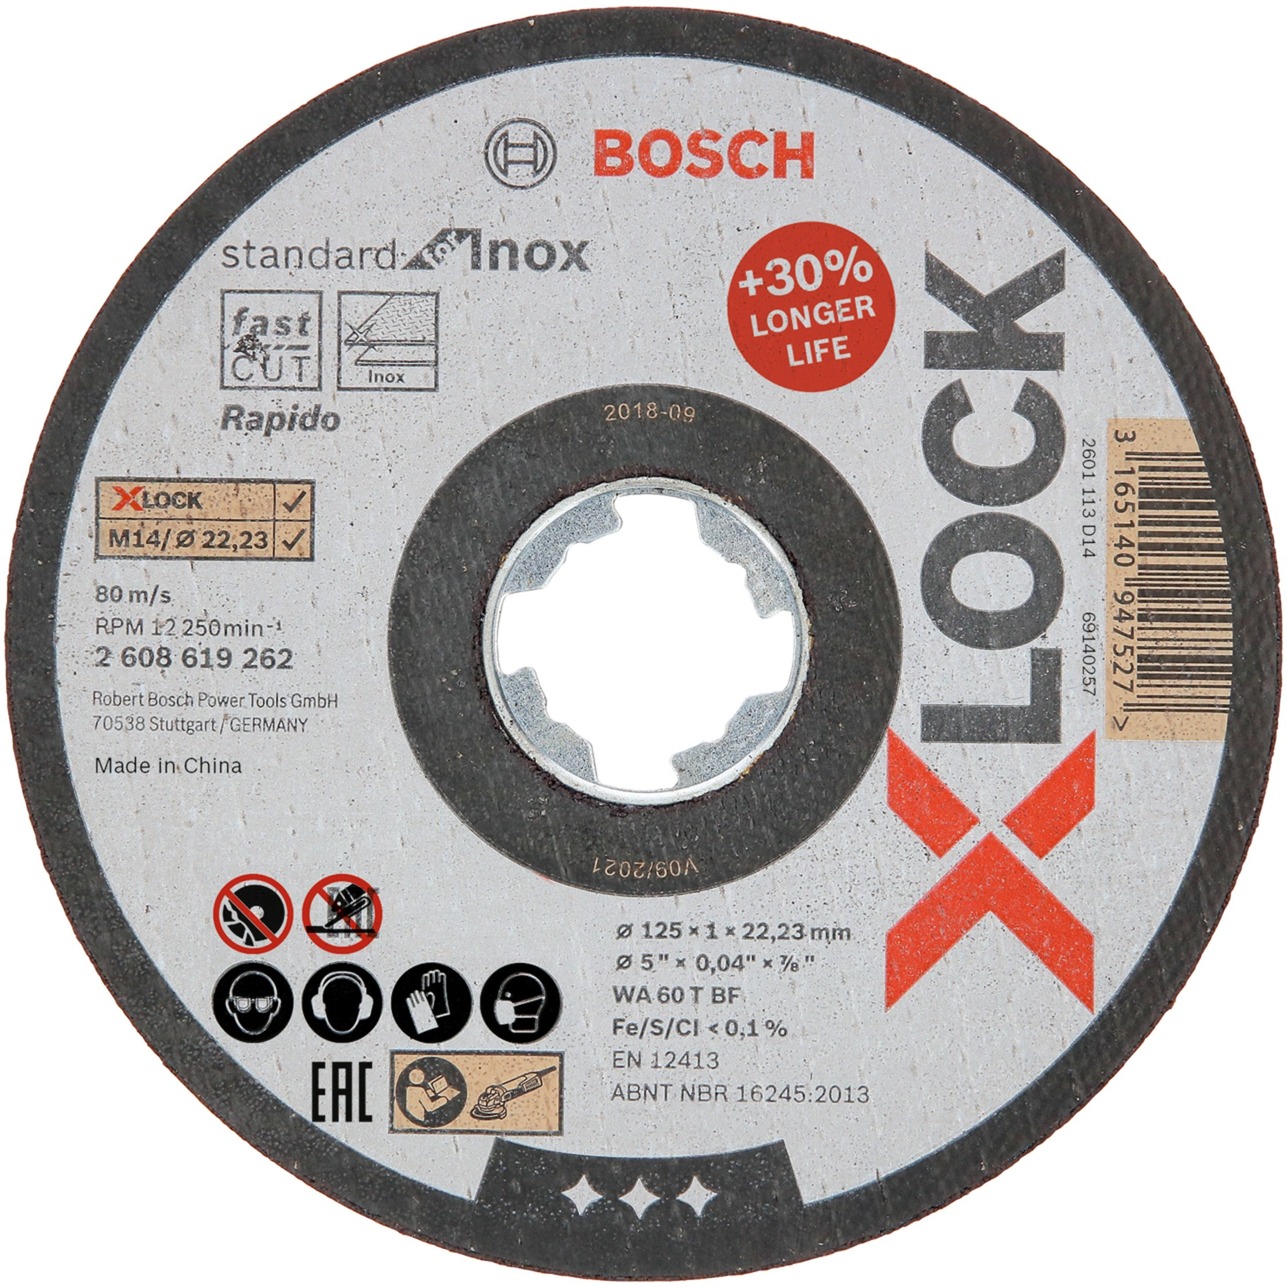 X-LOCK Trennscheibe Standard for Inox - Rapido, Ø 125mm von Bosch